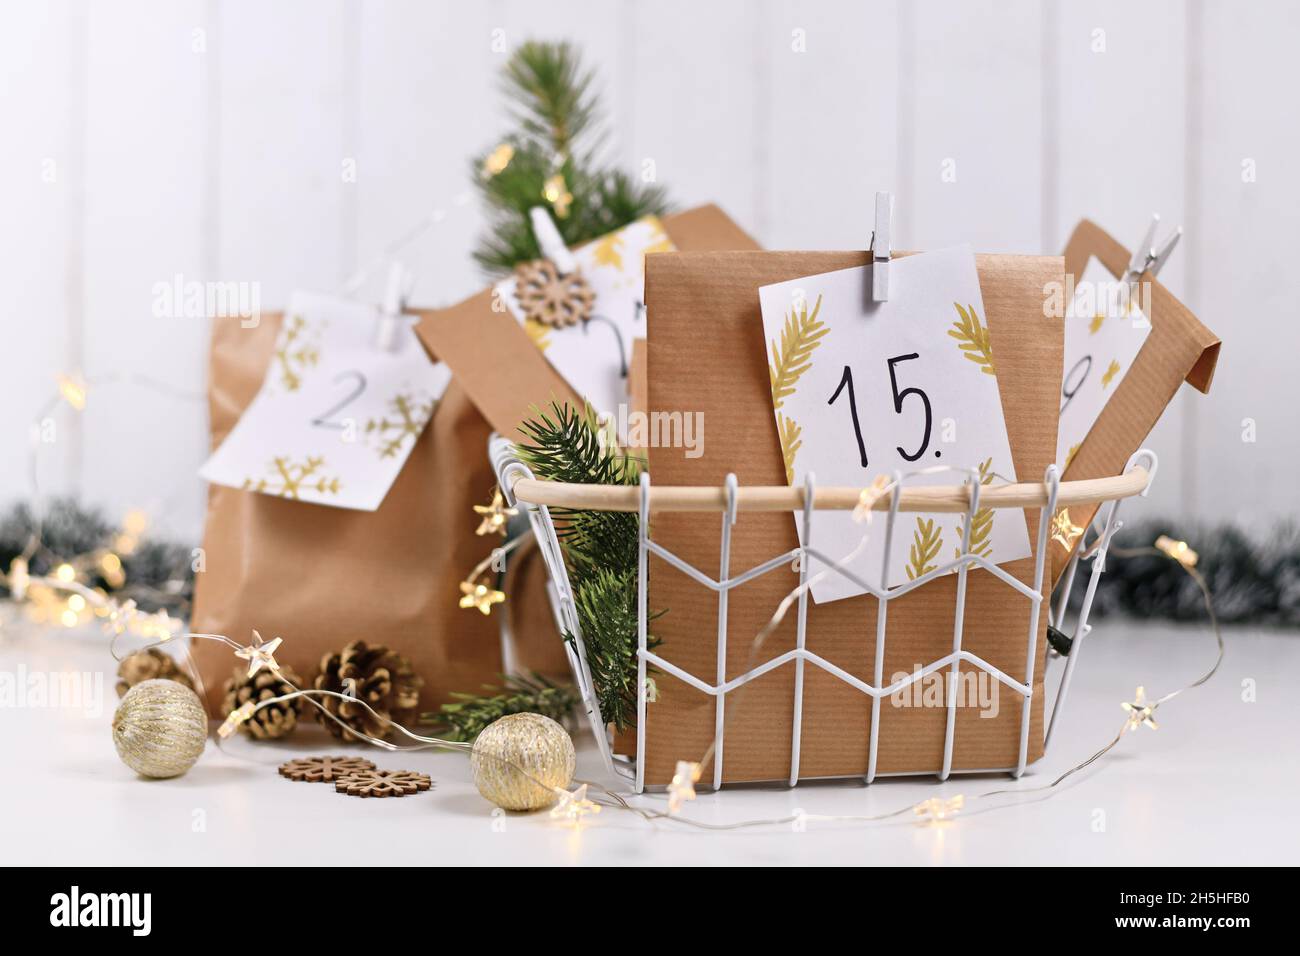 Calendario dell'avvento realizzato con borse di carta artigianale fatte in casa con numeri scritti a mano Foto Stock